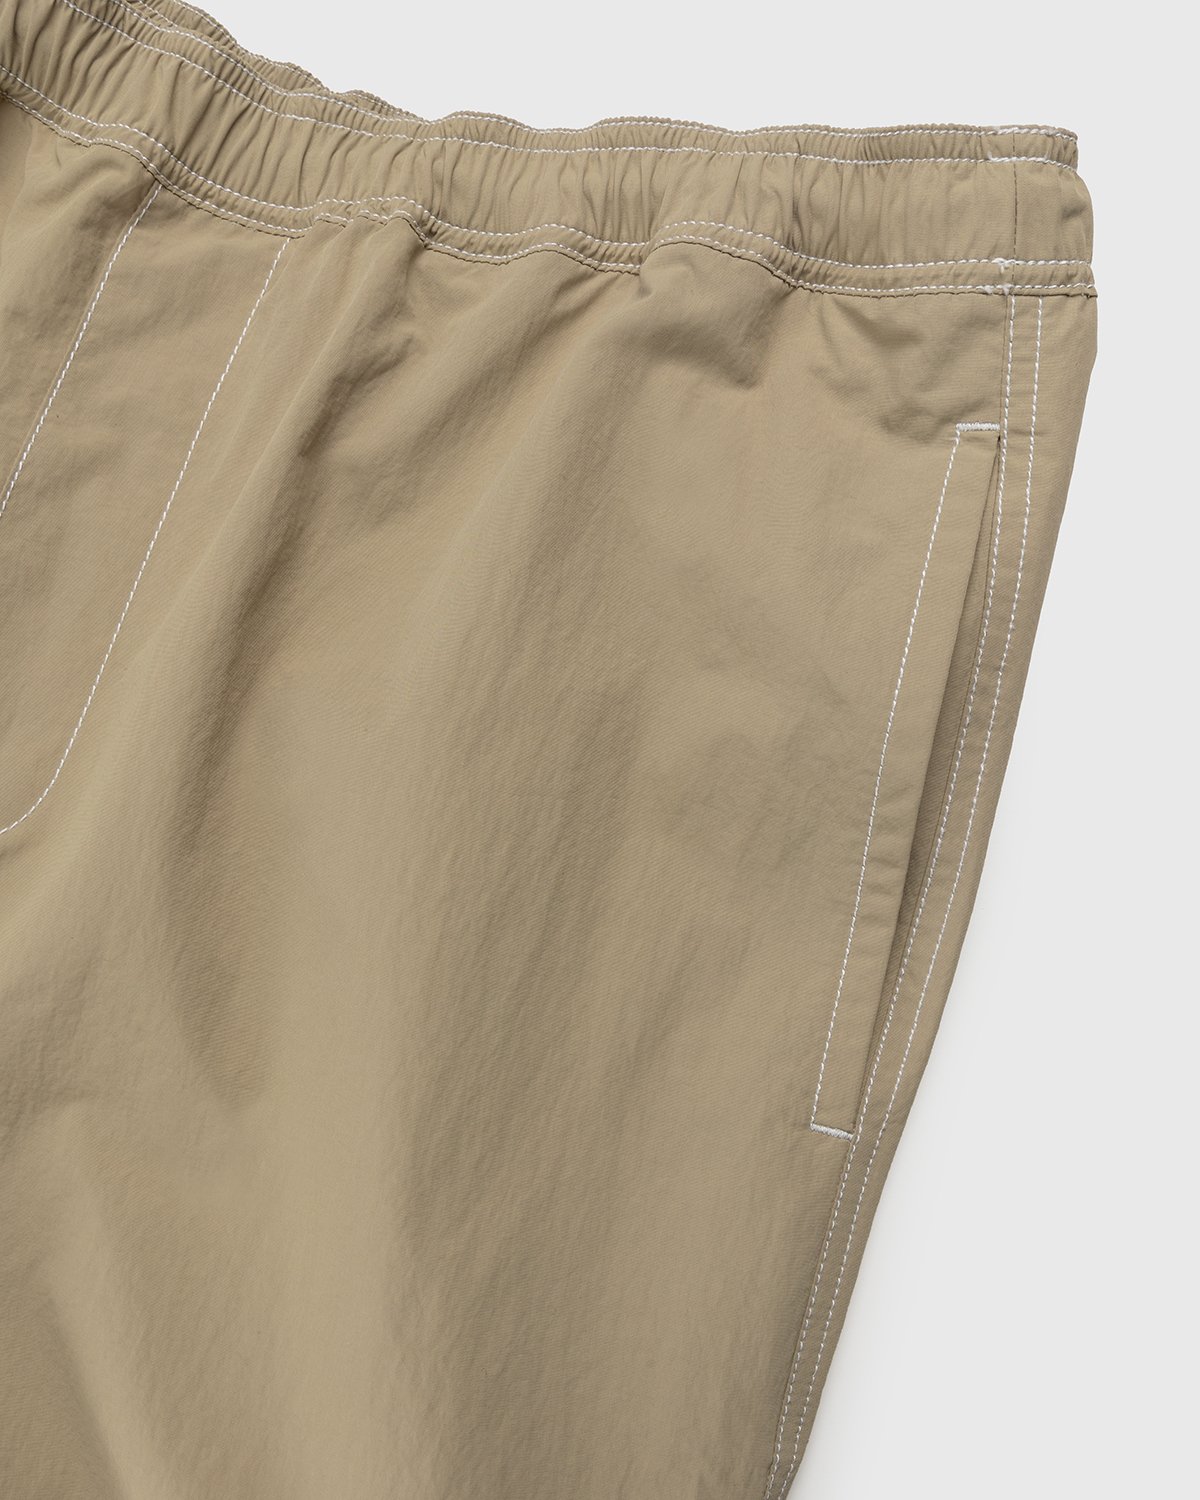 Highsnobiety - Contrast Brushed Nylon Elastic Pants Beige - Clothing - Beige - Image 3